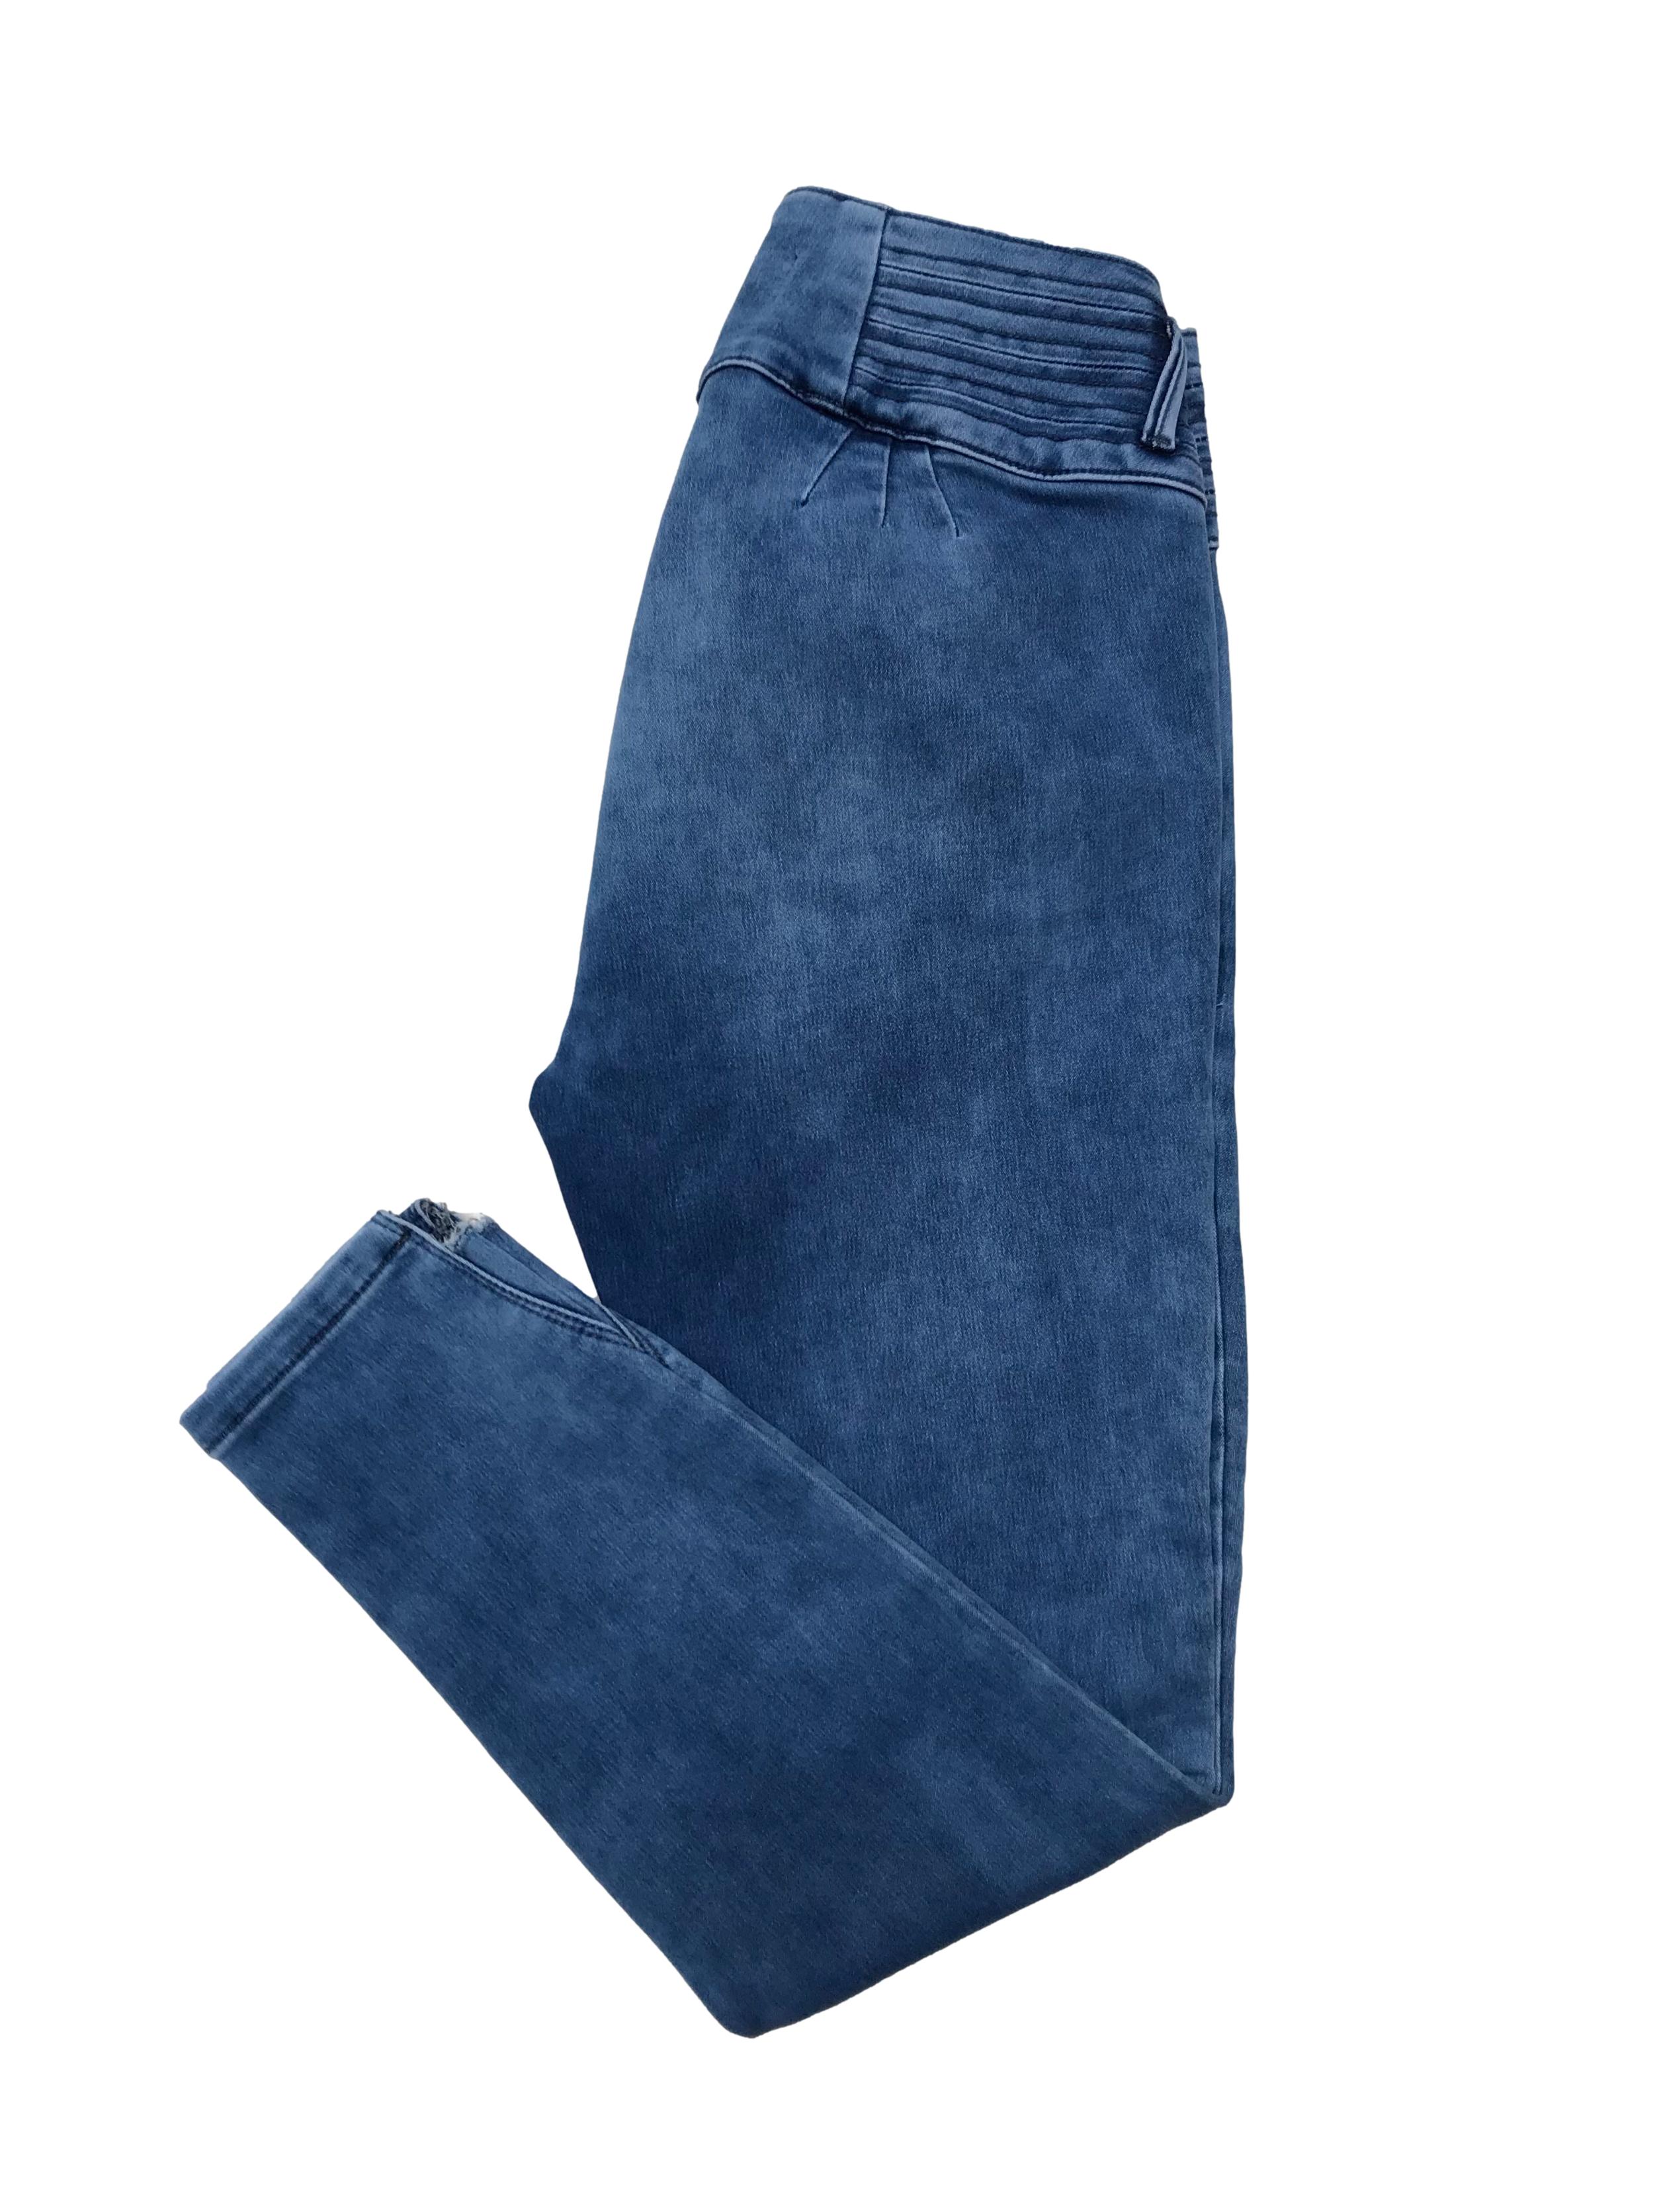 Pantalón jean pitillo stretch, pretina ancha, bolsillos laterales y detalle crop en la basta. Cintura 70cm sin estirar Largo 87cm. En etiqueta es 30